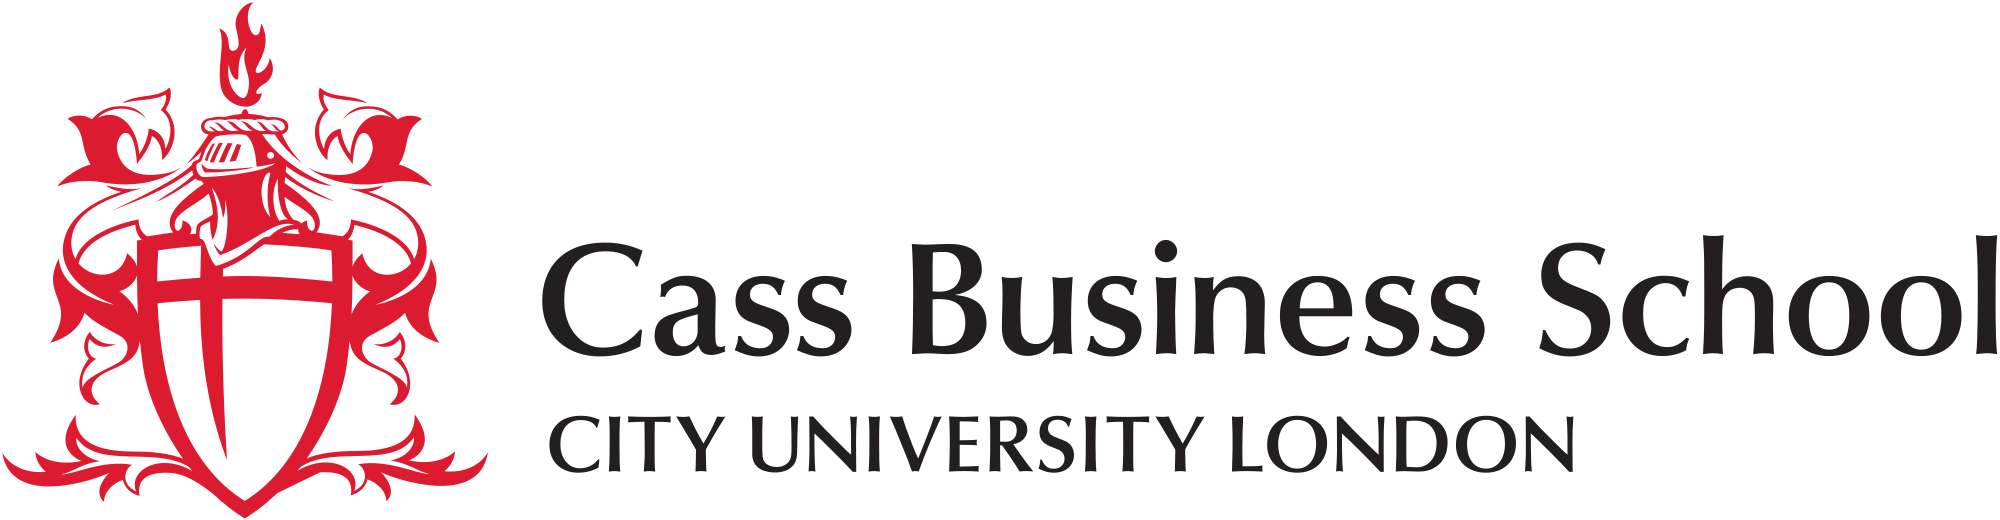 cass_business_school_logo-svg